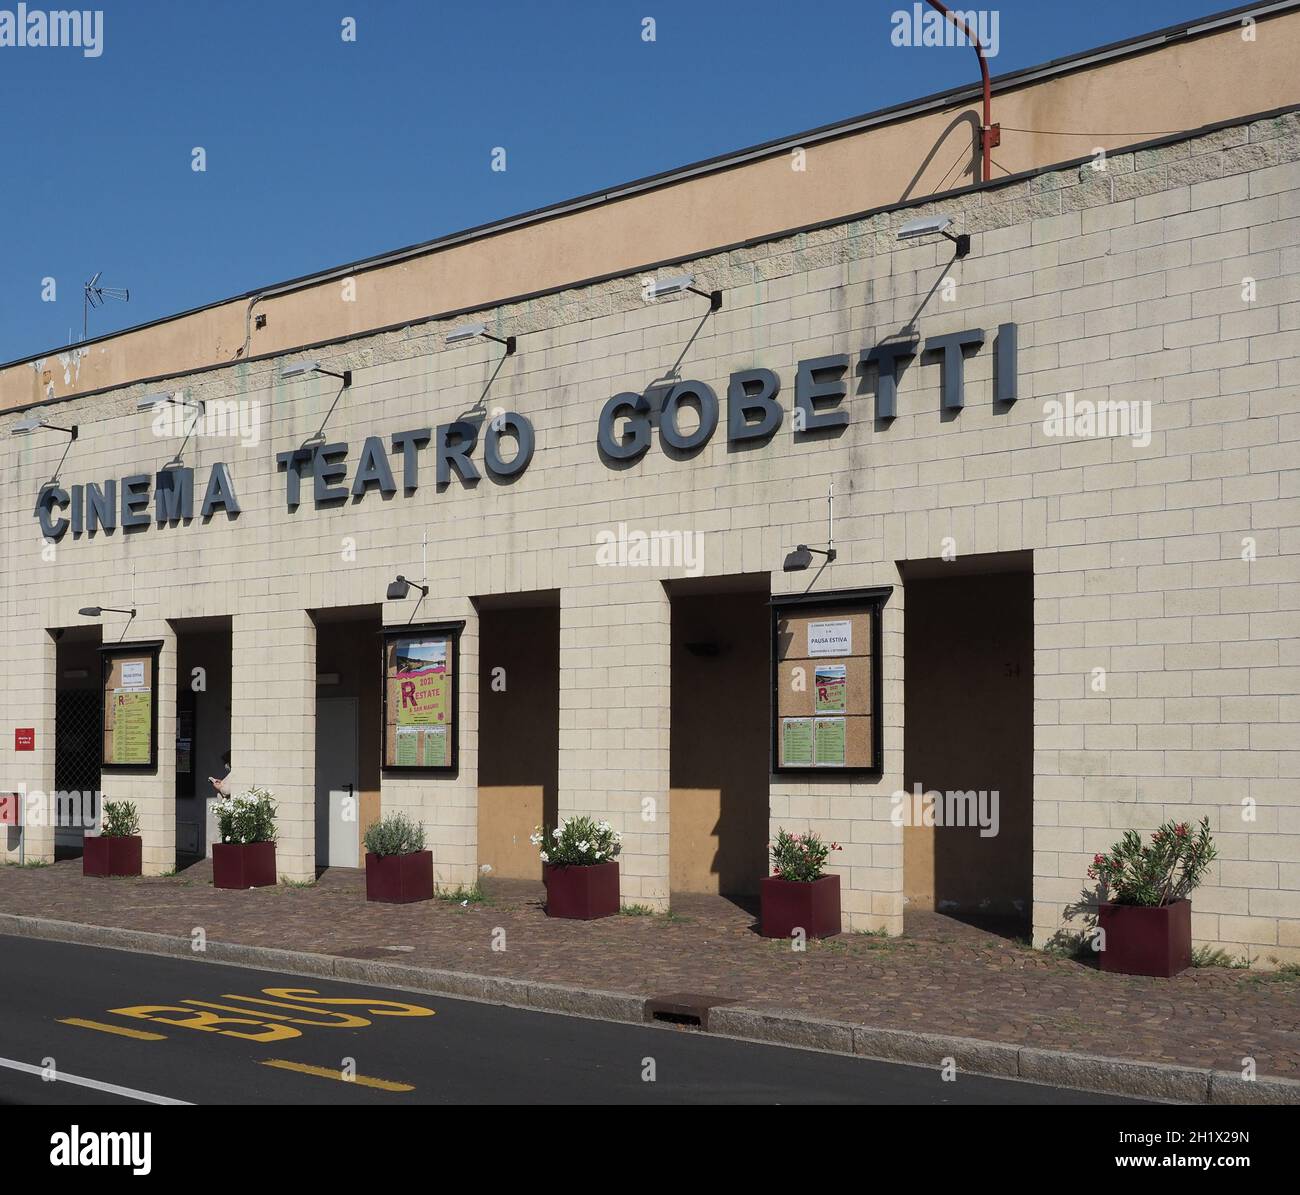 SAN MAURO, ITALIA - CIRCA LUGLIO 2021: Cinema Teatro Gobetti Foto Stock